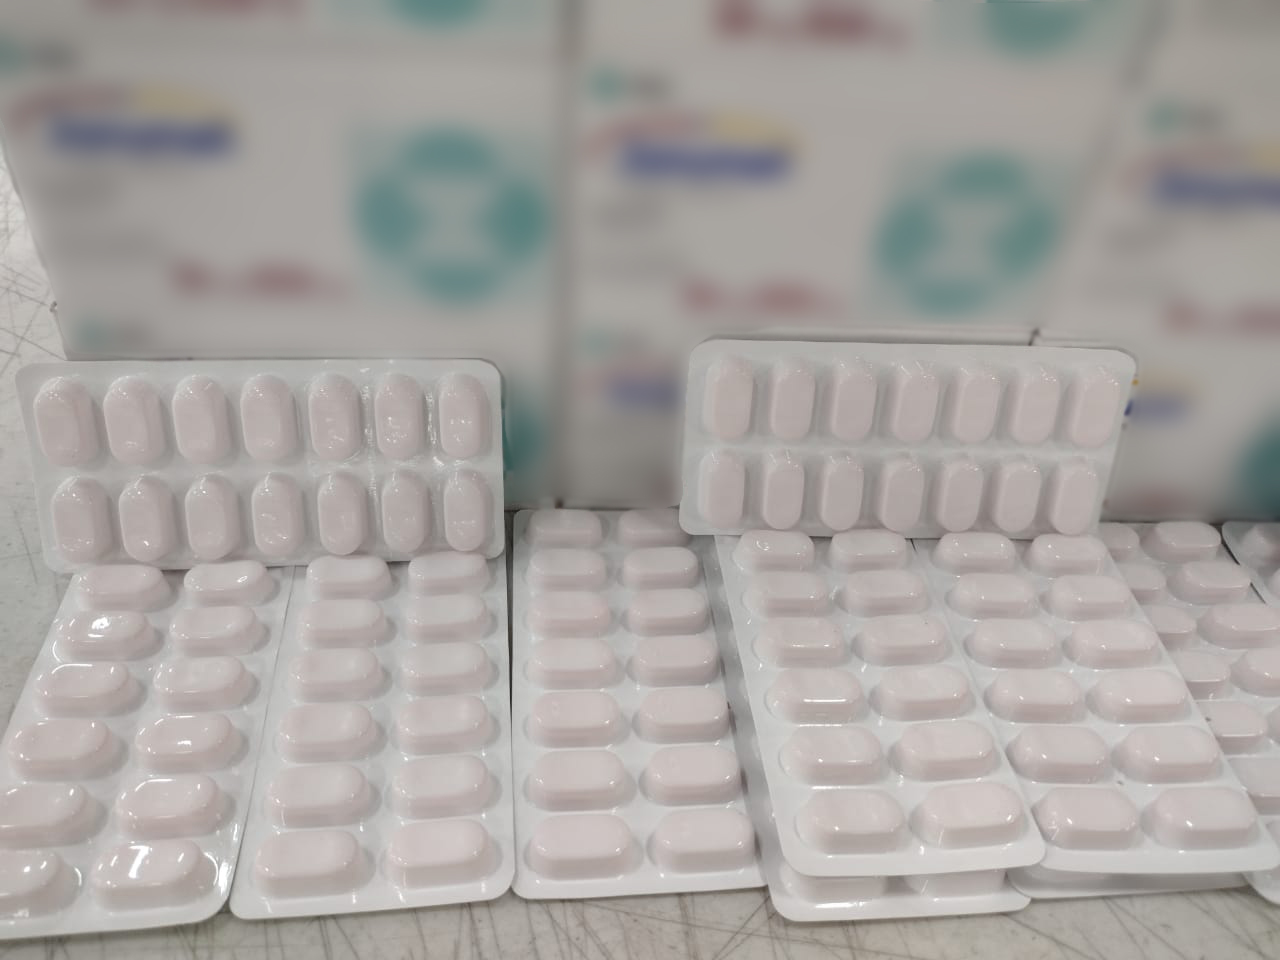 Guardia Nacional asegura 11 mil pastillas de medicamento controlado propiedad del sector Salud